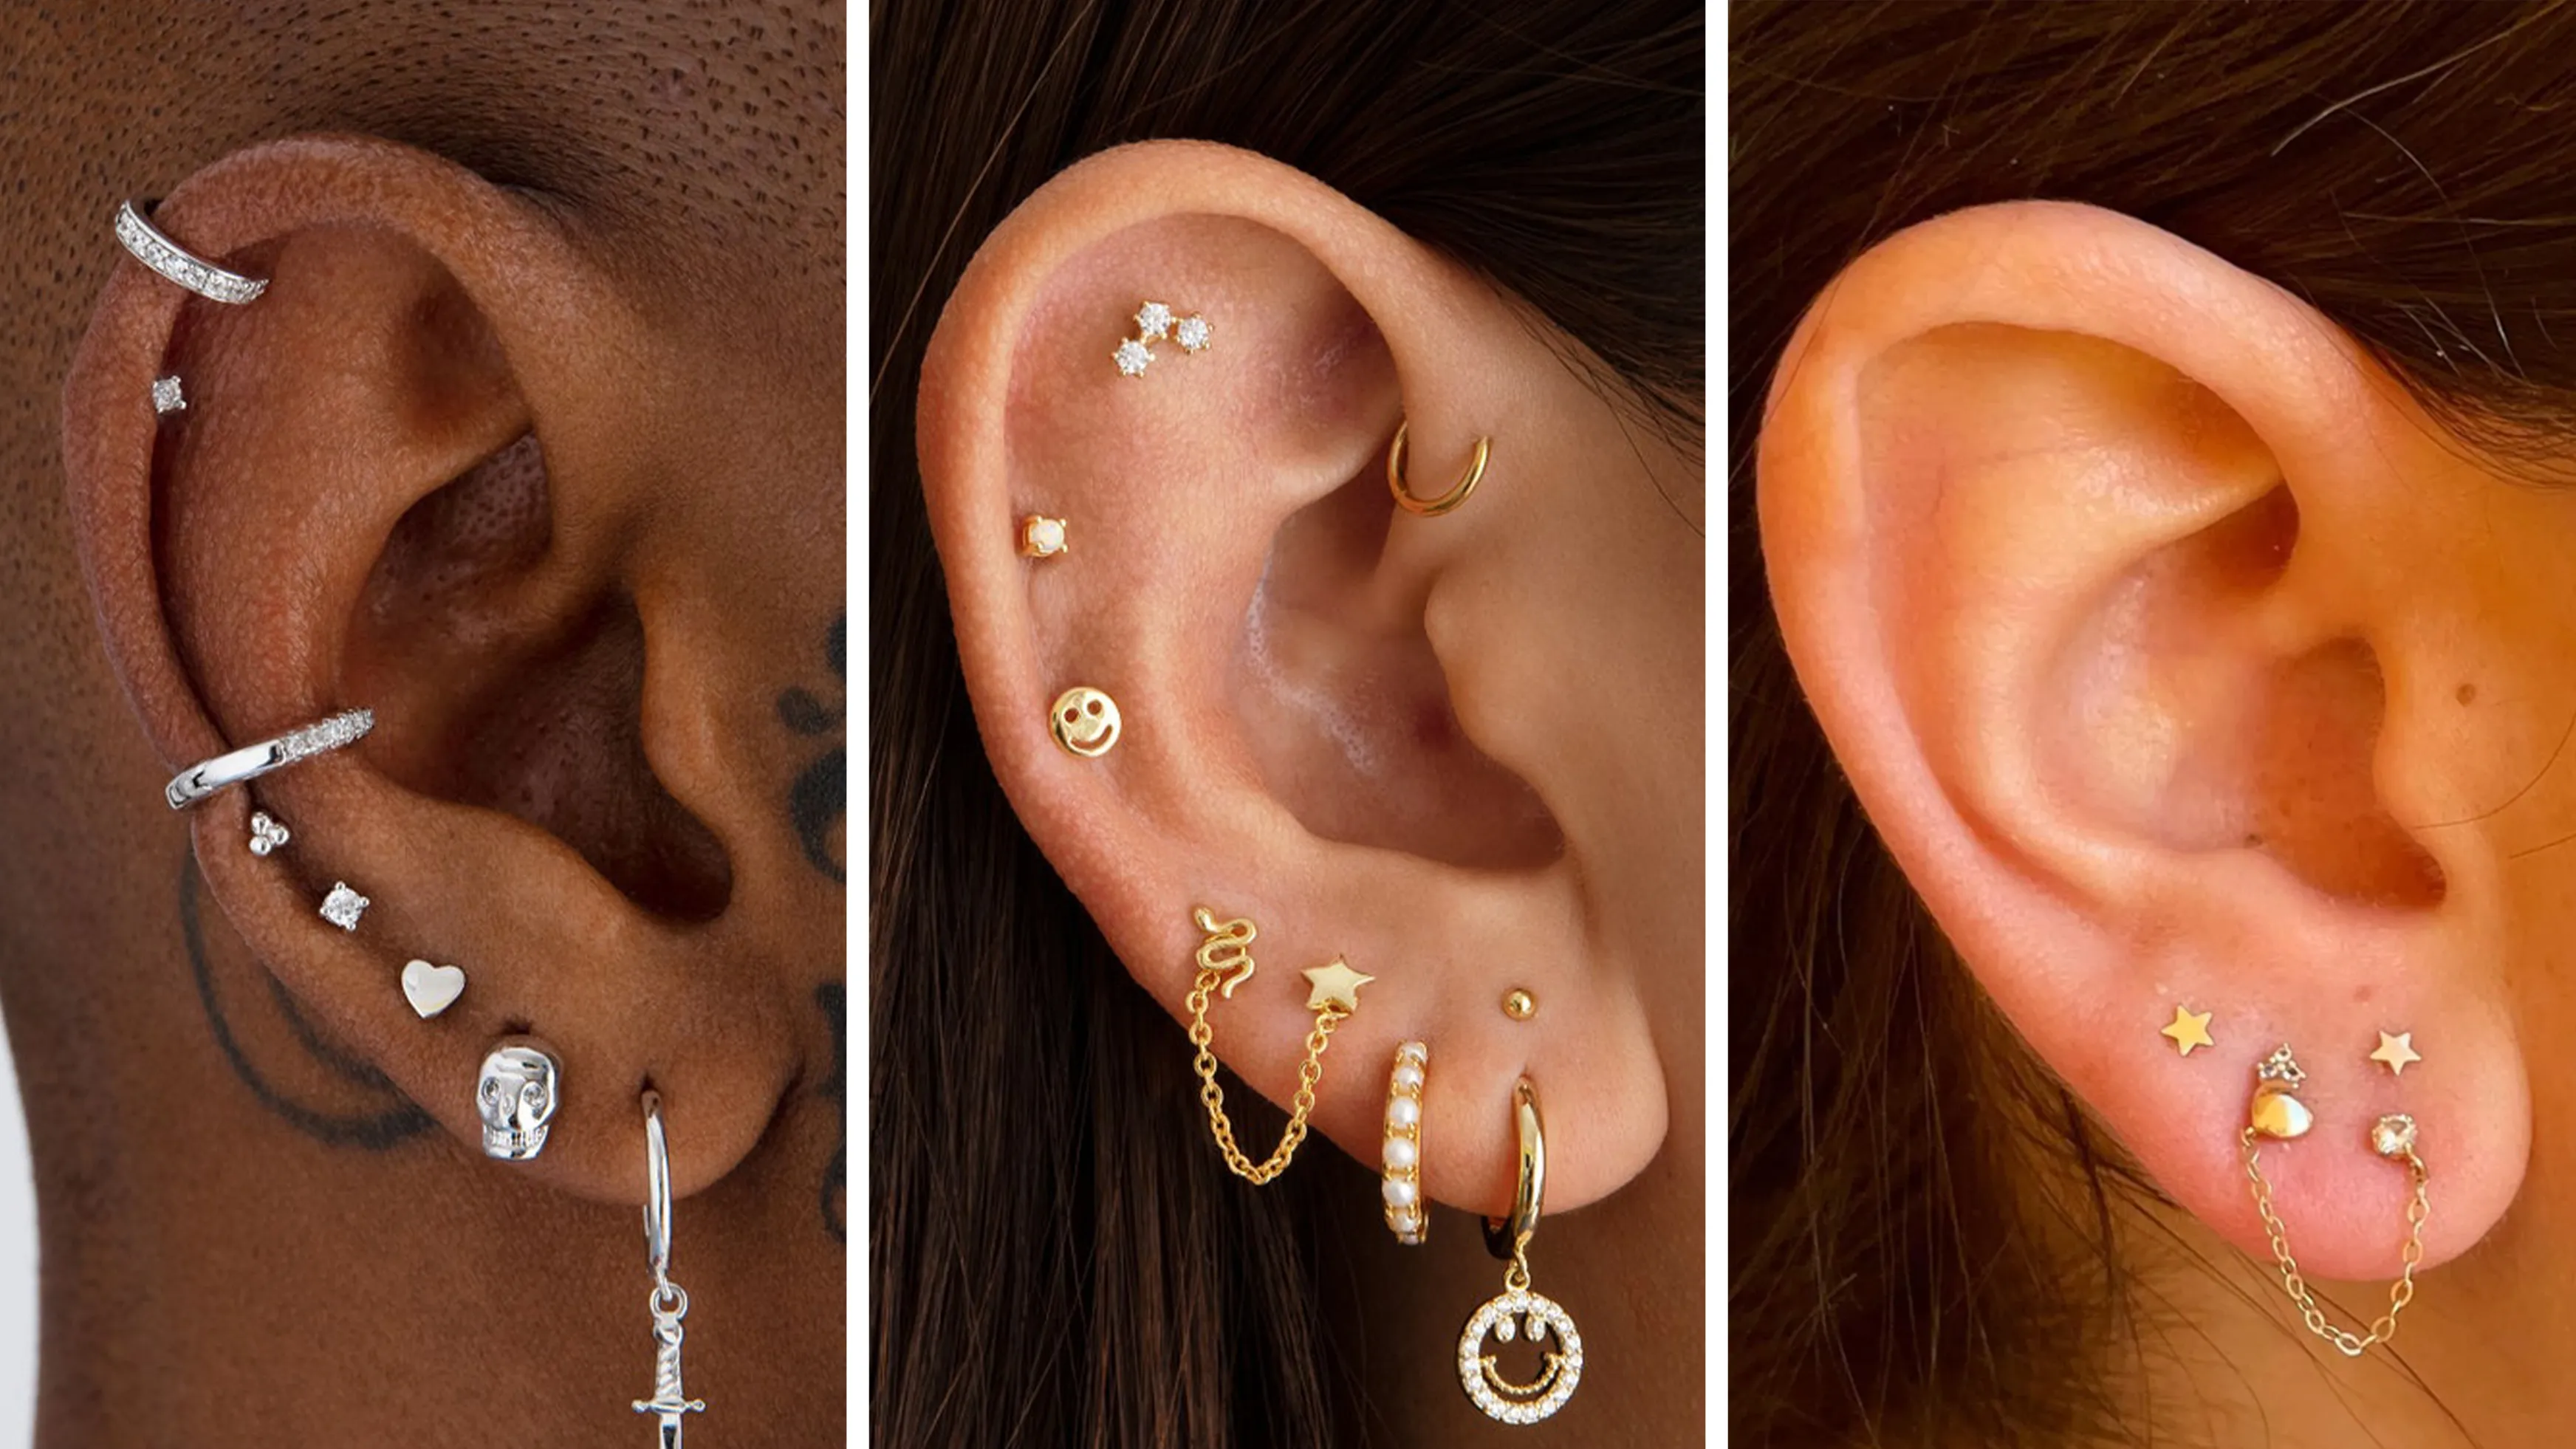 Ear Piercing Ideas & Types of Ear Piercings